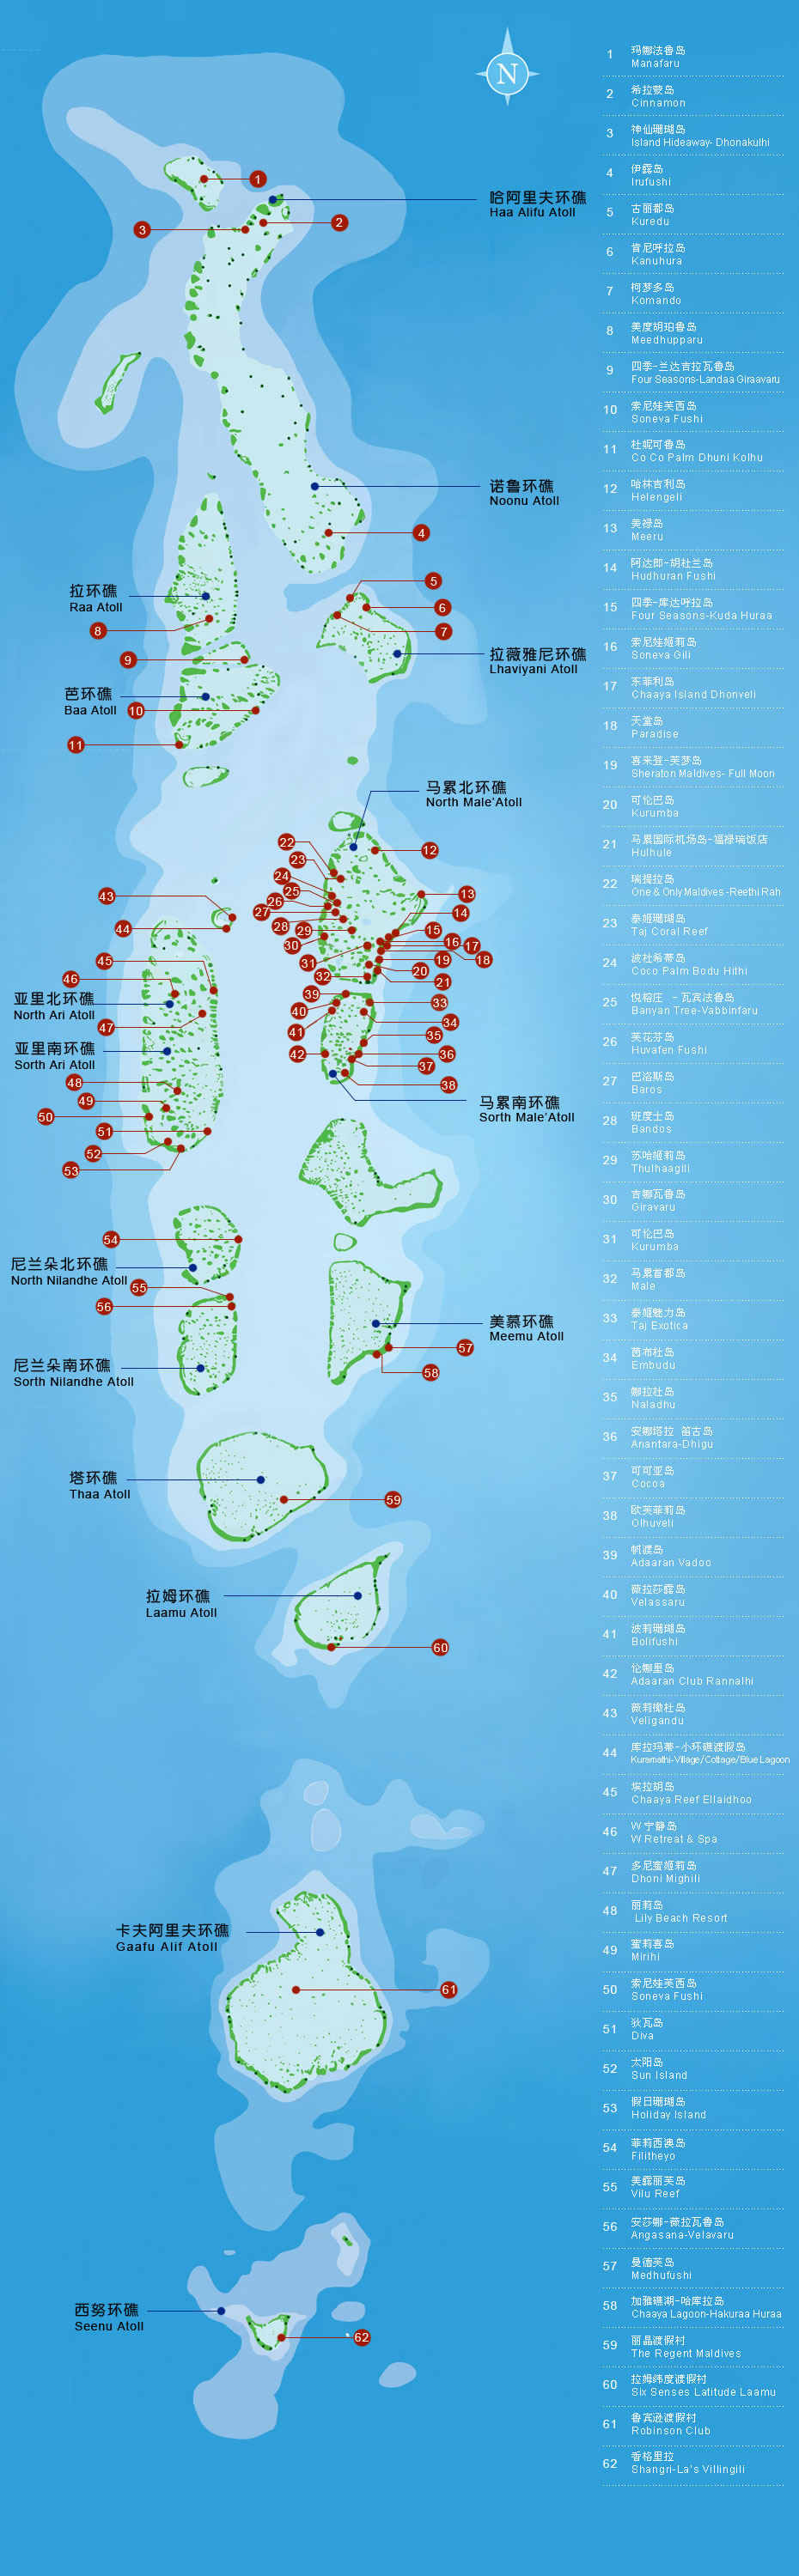 马尔代夫地图高清版